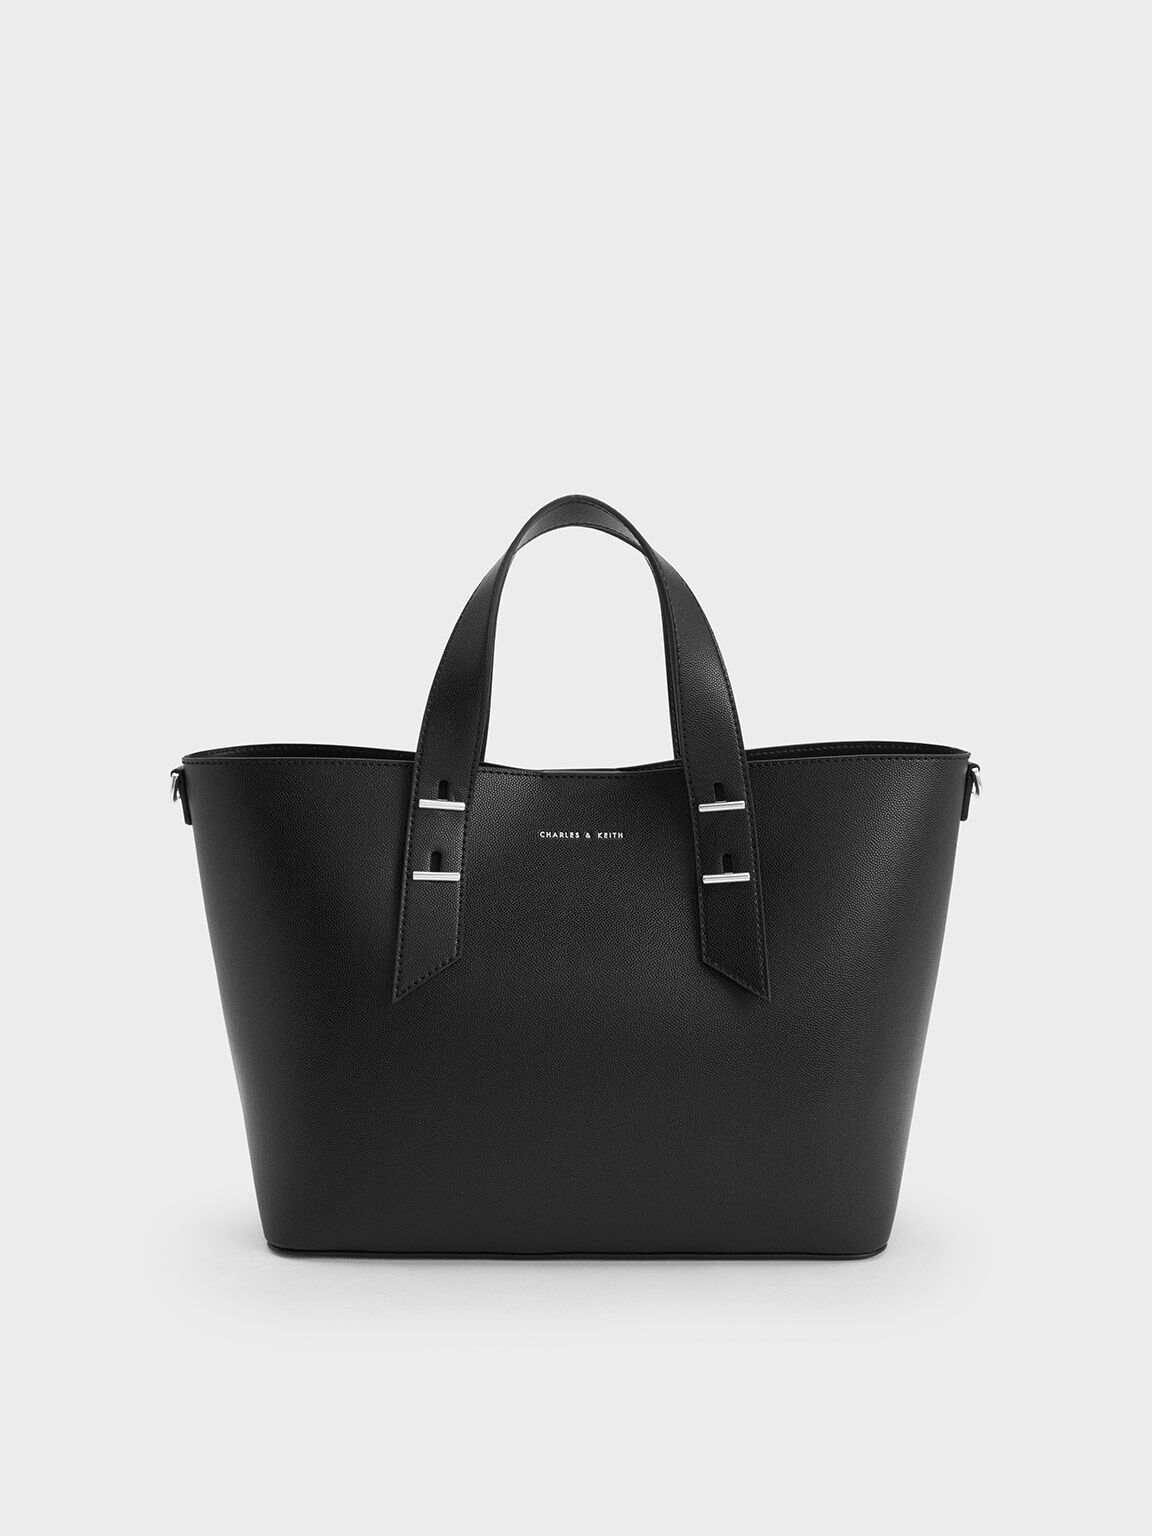 H&co, Bags, Black Hco Handbag